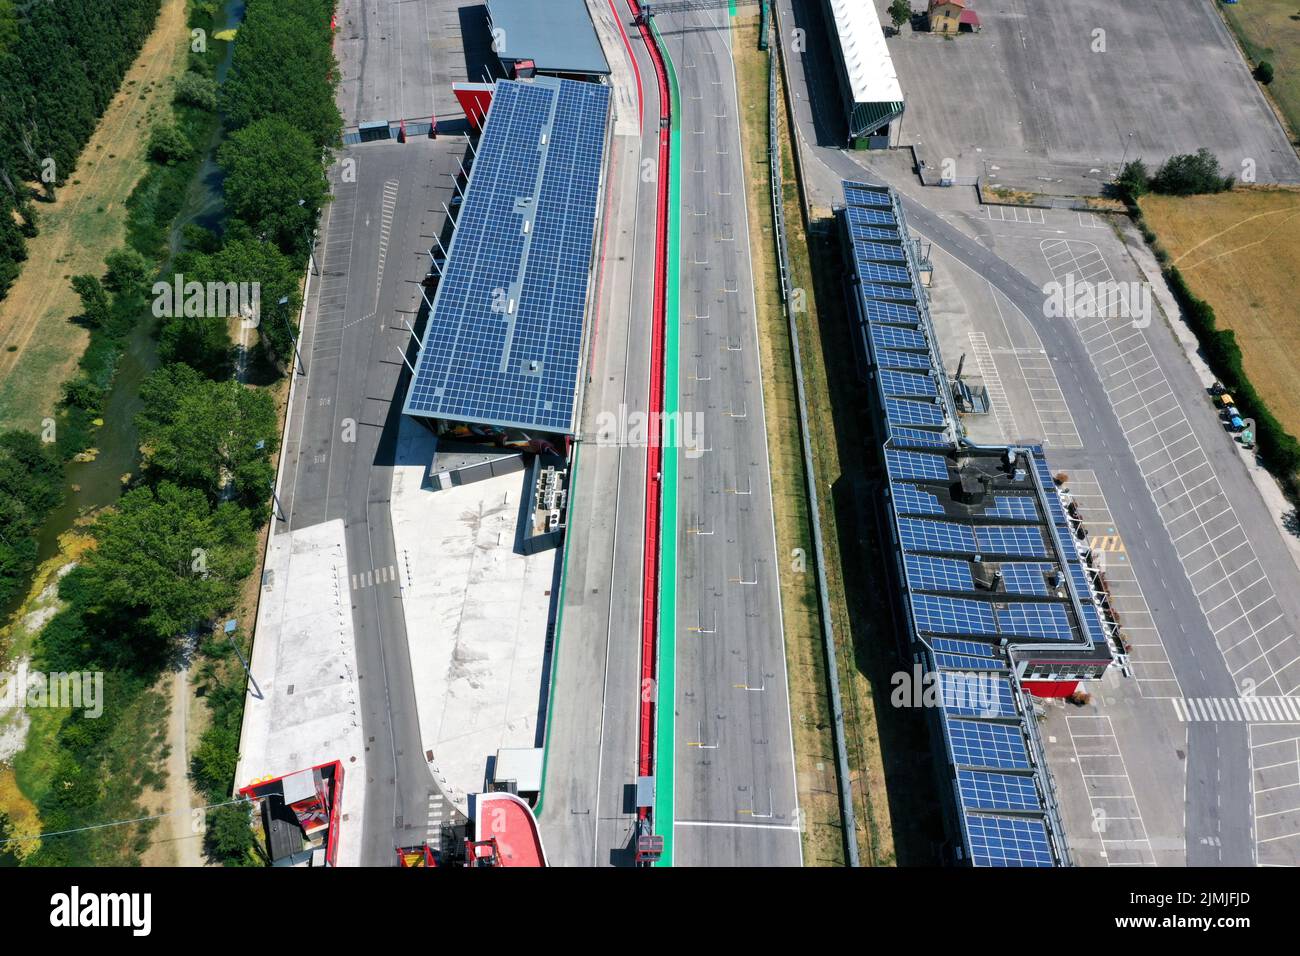 Veduta aerea del circuito di Imola, Imola, Bologna, Emilia Romagna, Italia Foto Stock